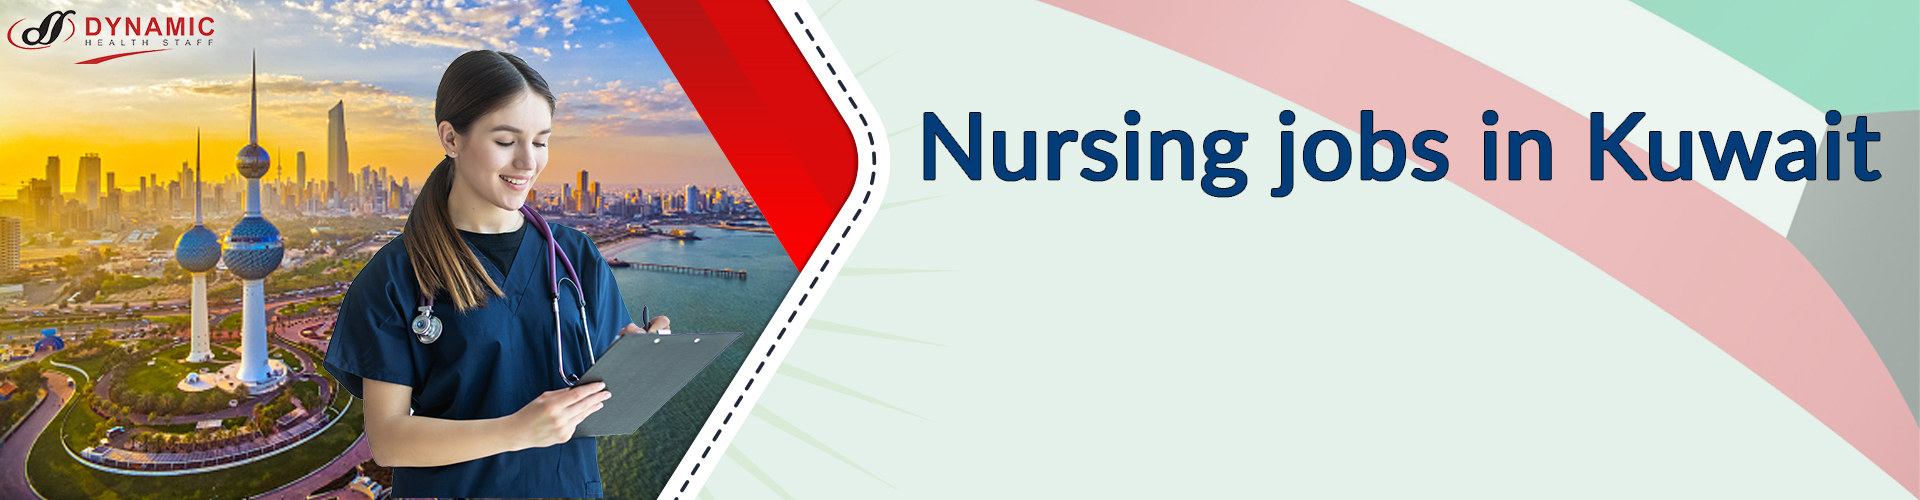 Nursing jobs in Kuwait